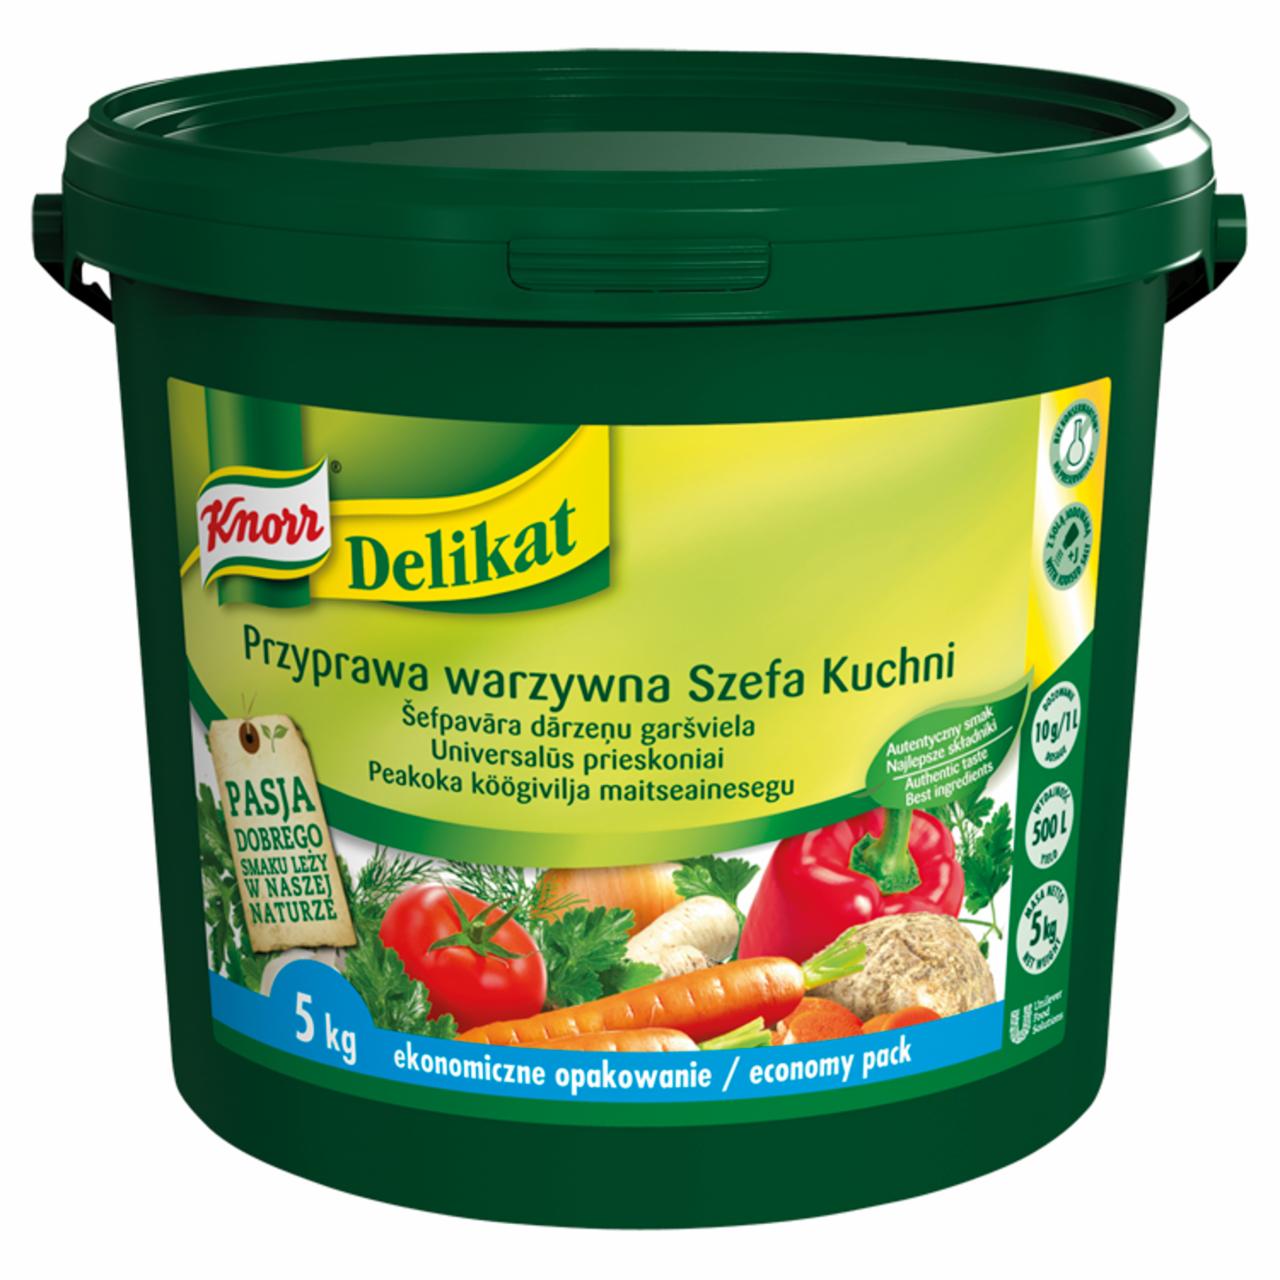 Zdjęcia - Knorr Delikat Przyprawa warzywna Szefa Kuchni 5 kg